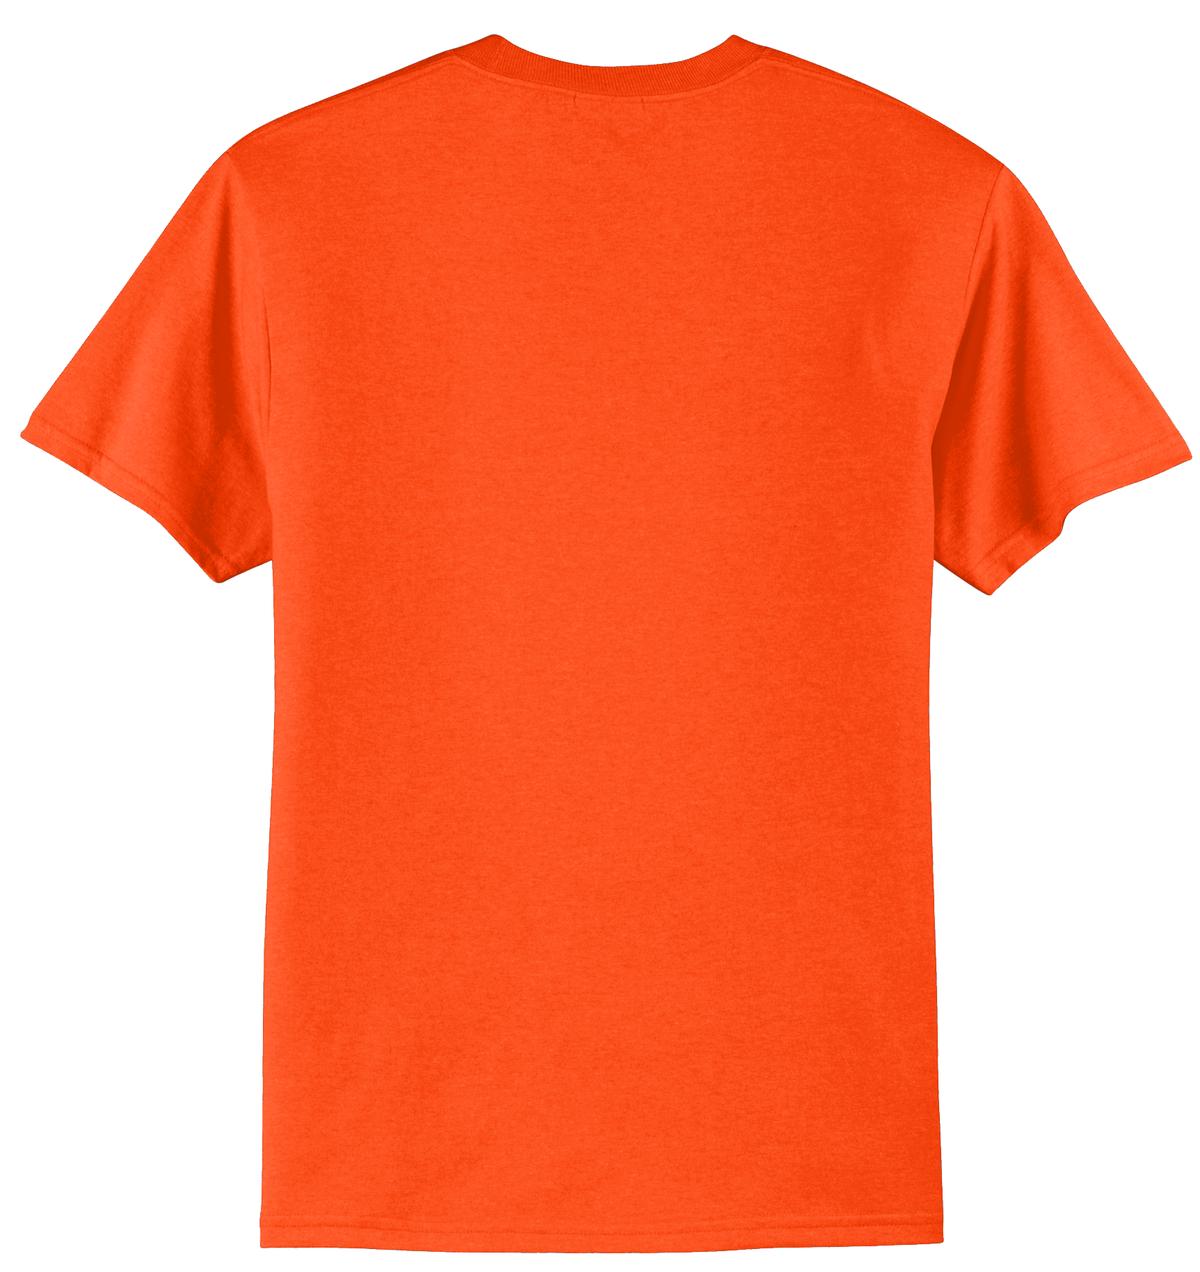 Mafoose Men's Core Blend Tee Shirt Safety Orange